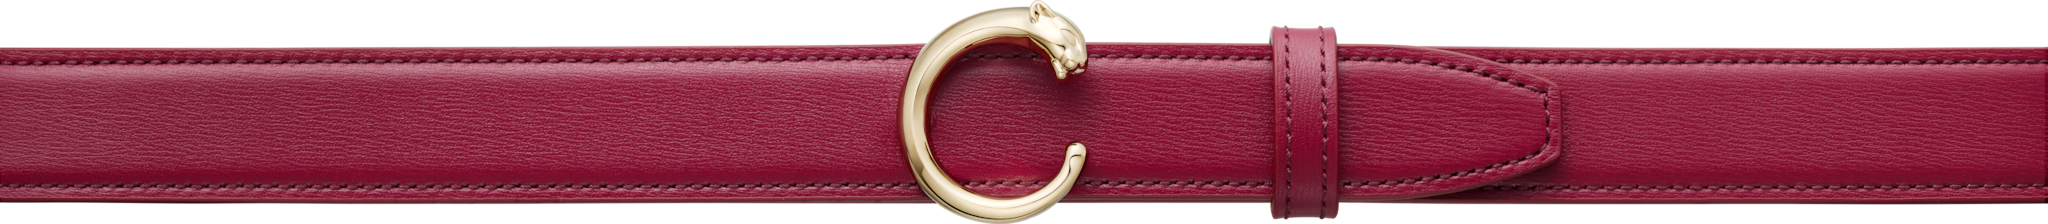 Cinturón Panthère de CartierPiel de ternera rojo cereza, hebilla acabado dorado